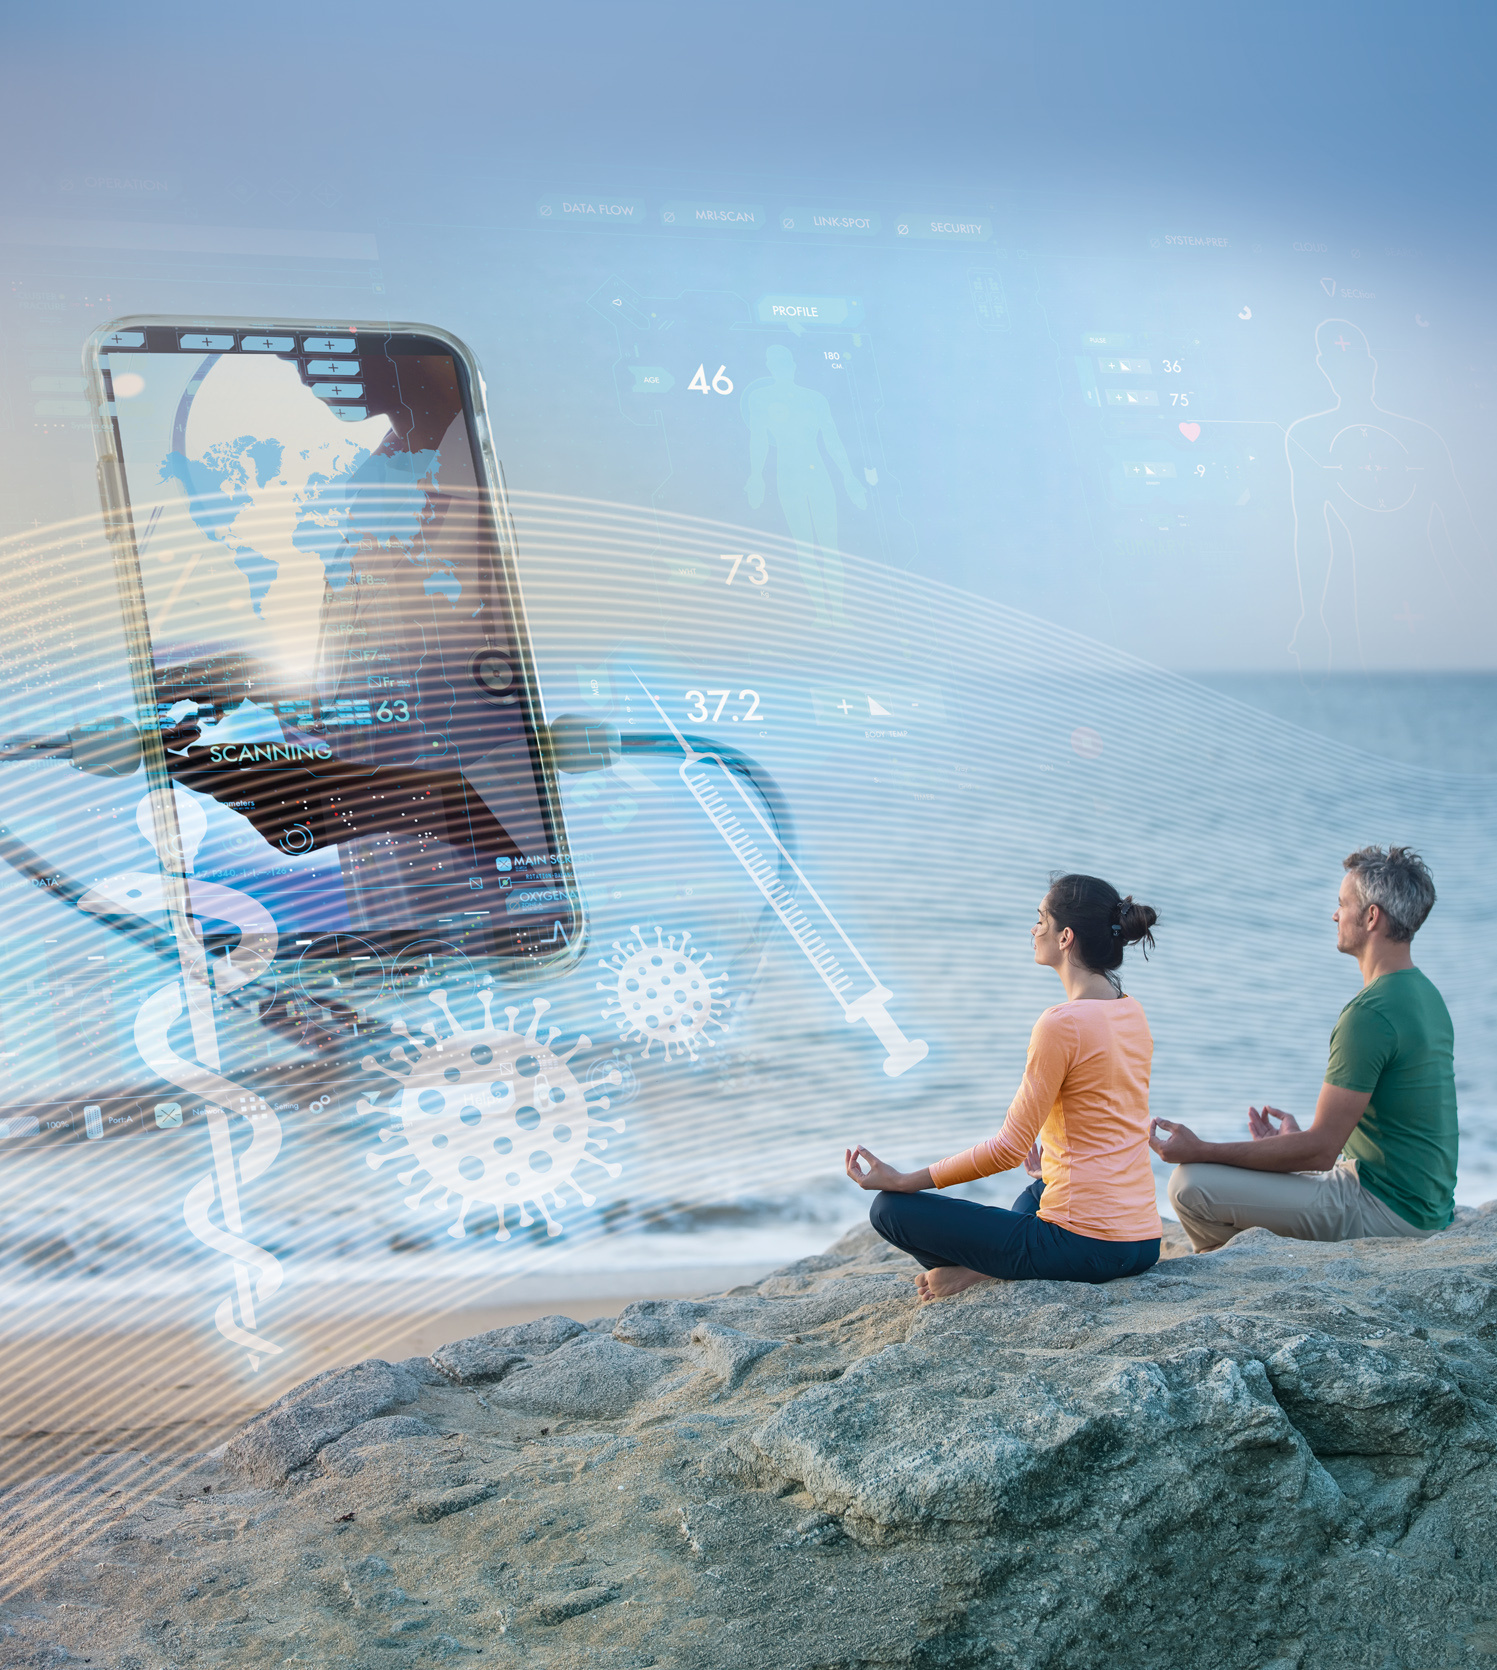 Zu sehen sind zwei meditierende Personen am Meer. Links von Ihnen sieht man ein überdimensionales Smartphone und blau leuchtende Symbole